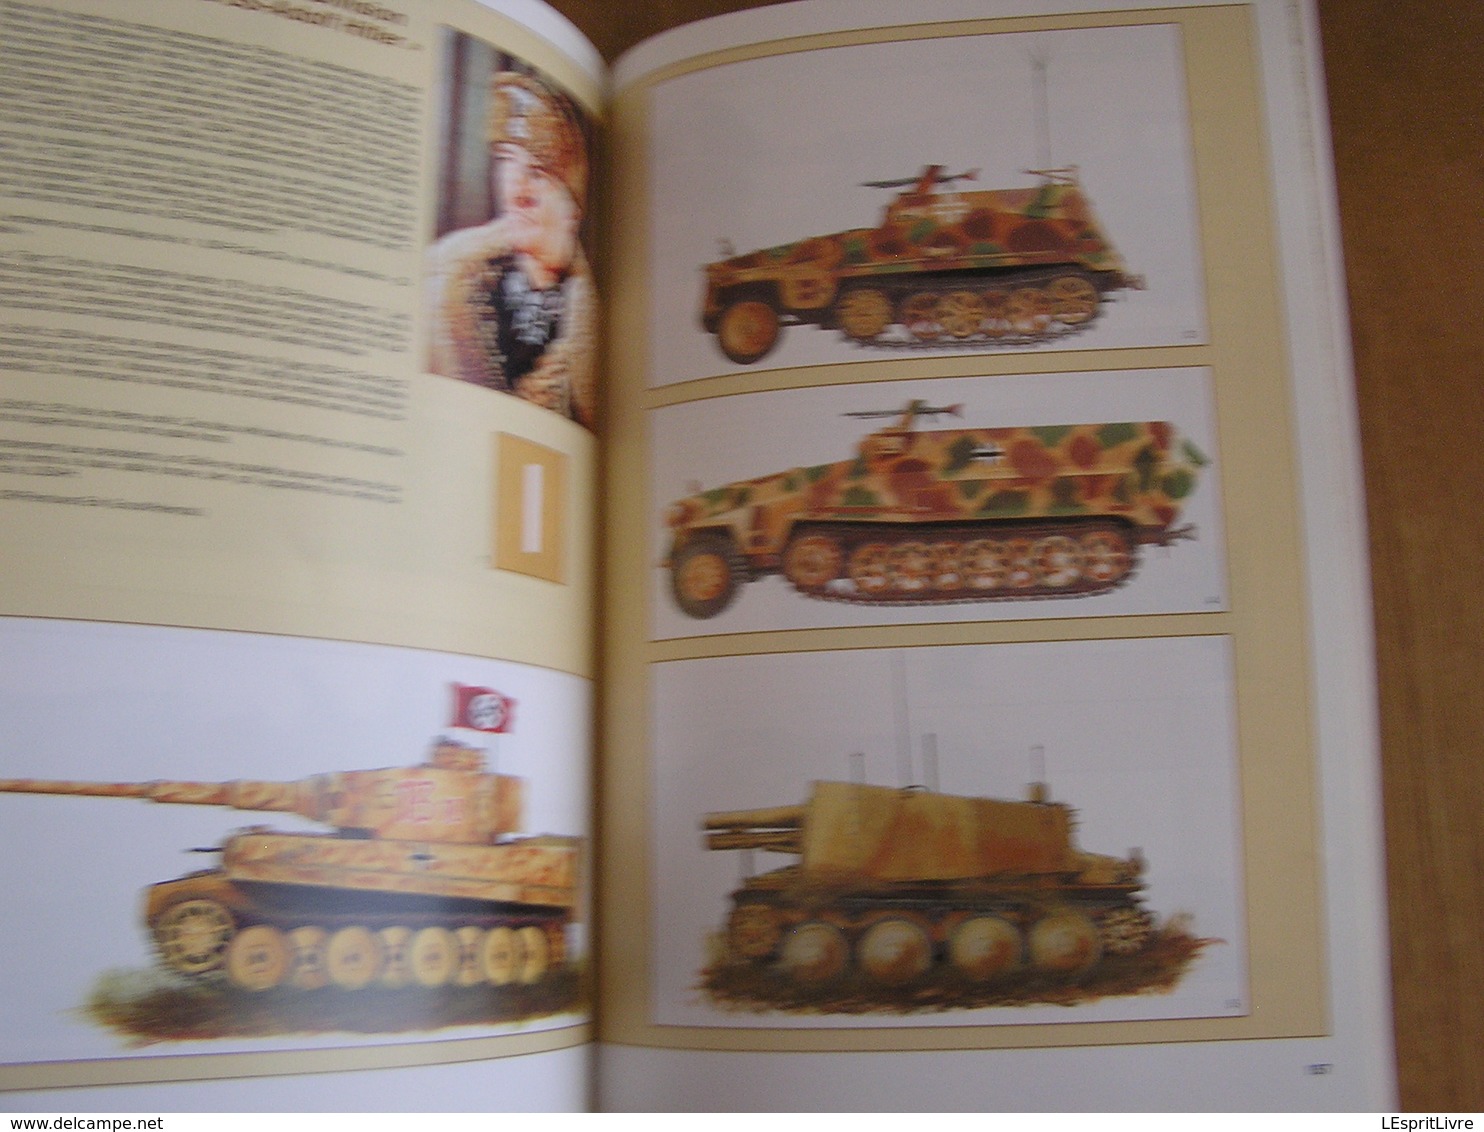 HISTORICA Hors Série N° 56 Guerre 40 45 Bataille 1943 Chars Tanks Russie Front de l'Est Invasion Allemande Panzer